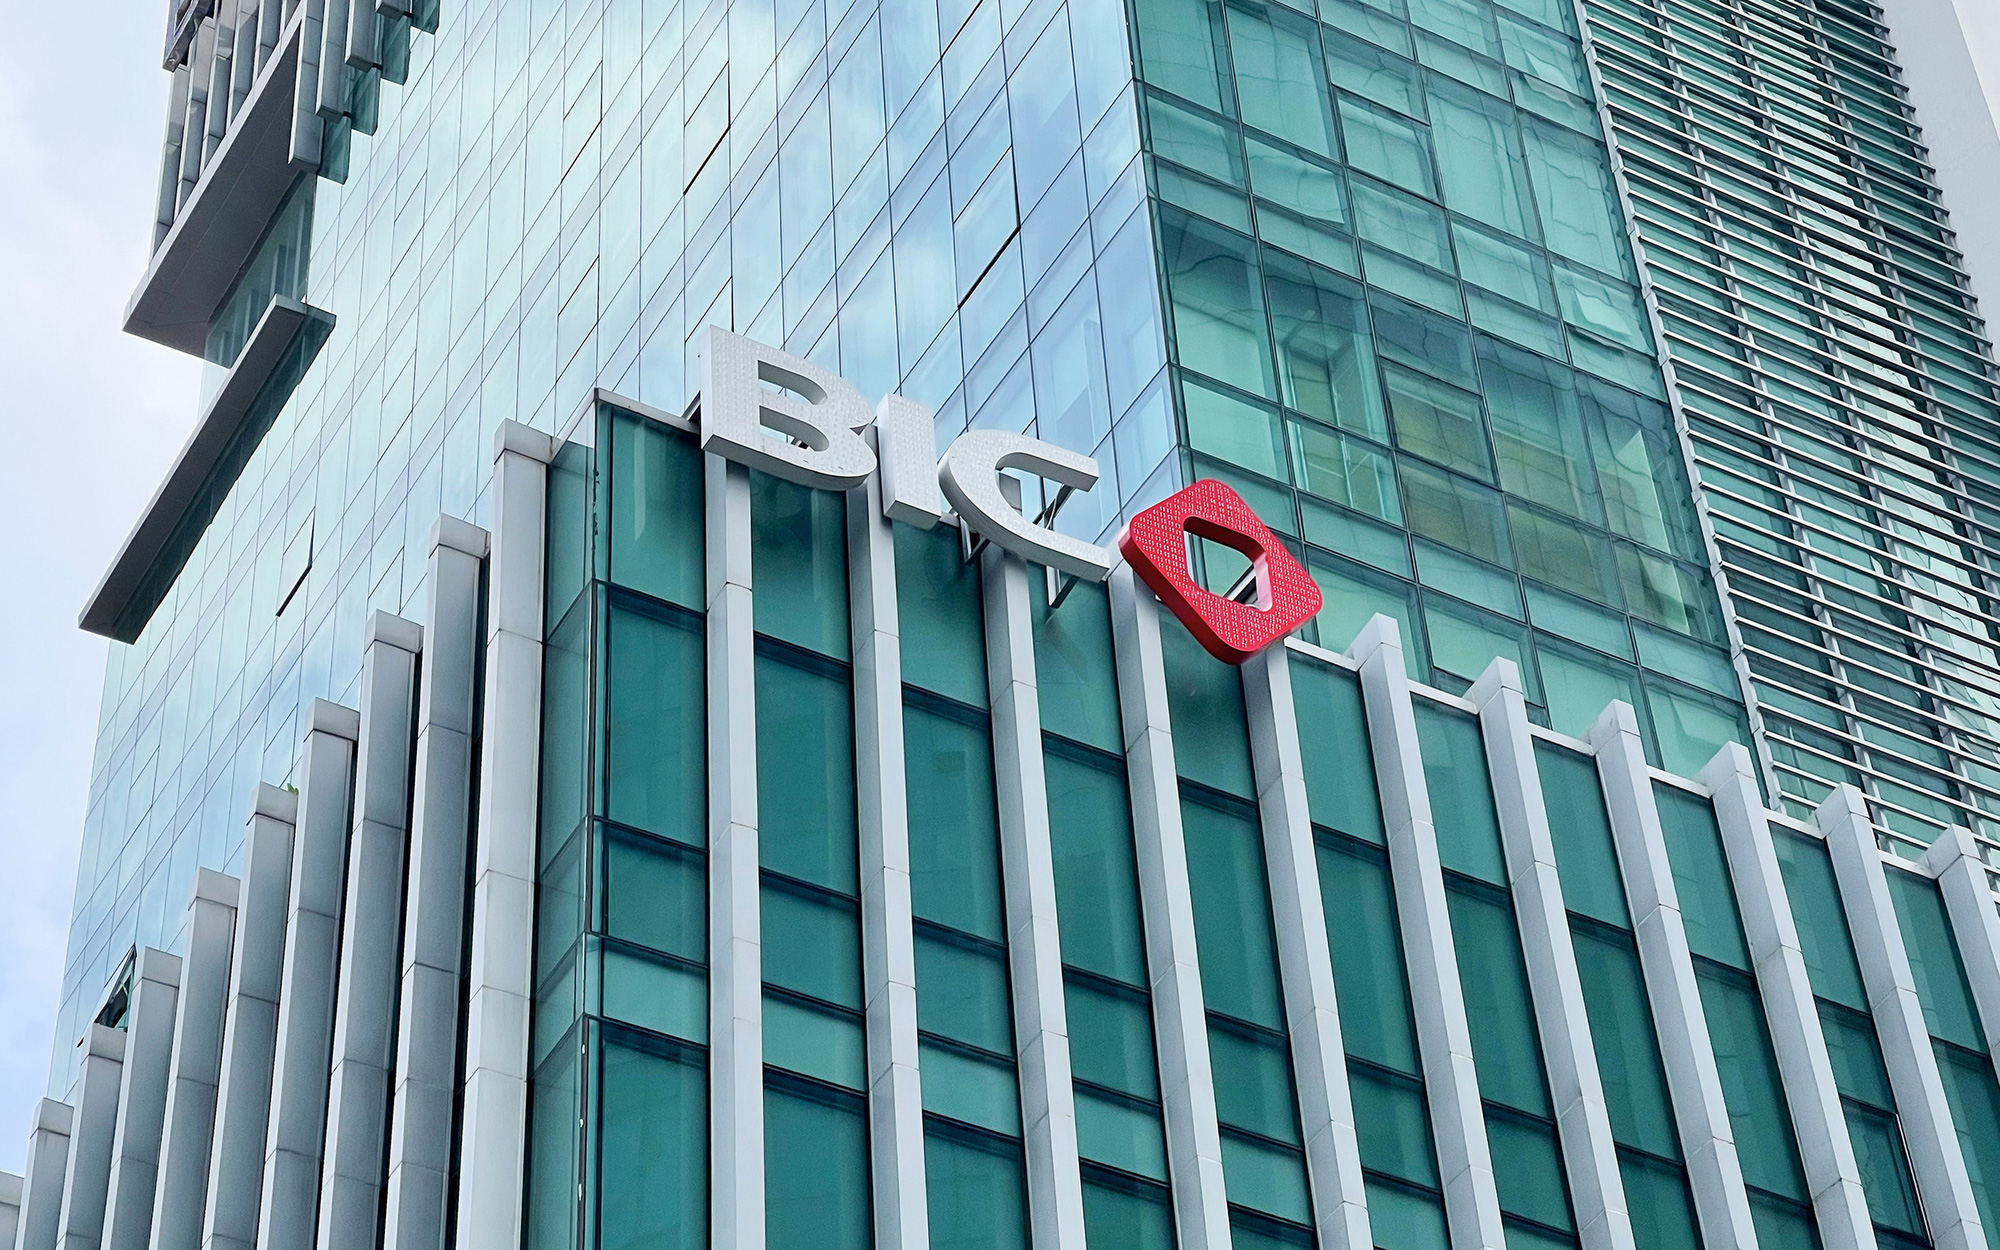 BIC được vinh danh trong top 25 thương hiệu tài chính dẫn đầu tại Việt Nam